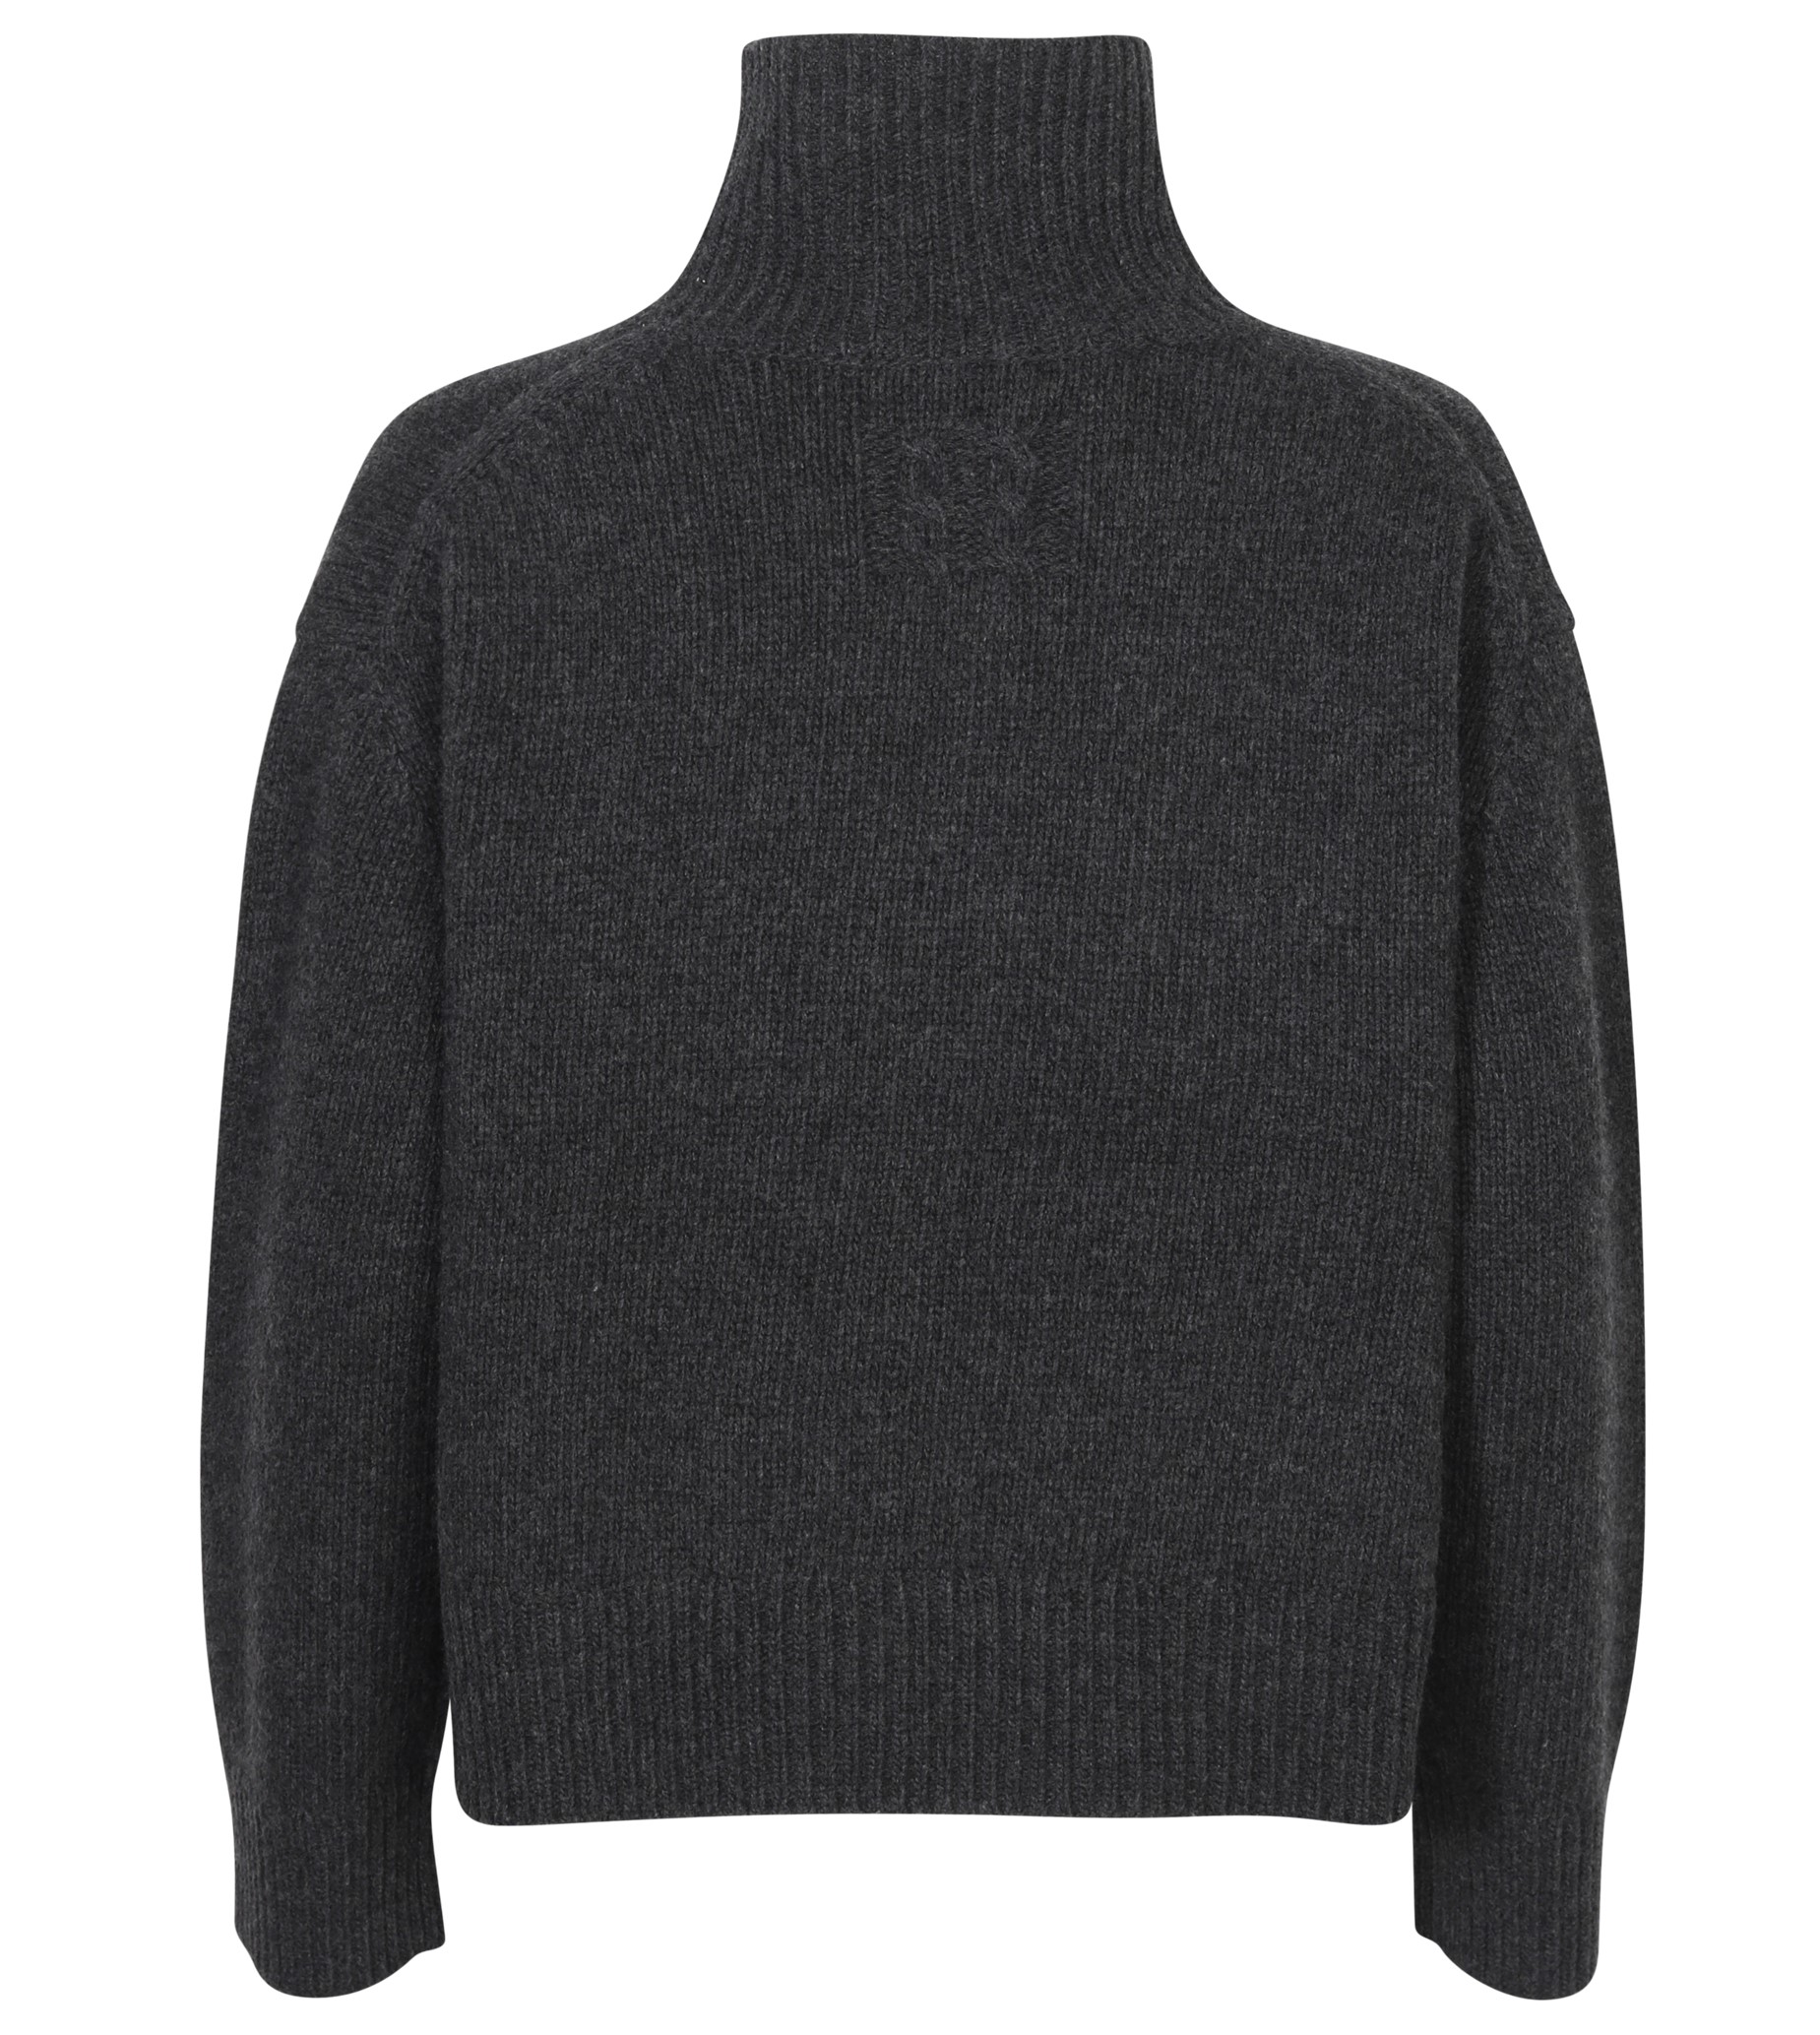 NILI LOTAN Omaira Knit Turtleneck Sweater in Dark Charcoal Melange S